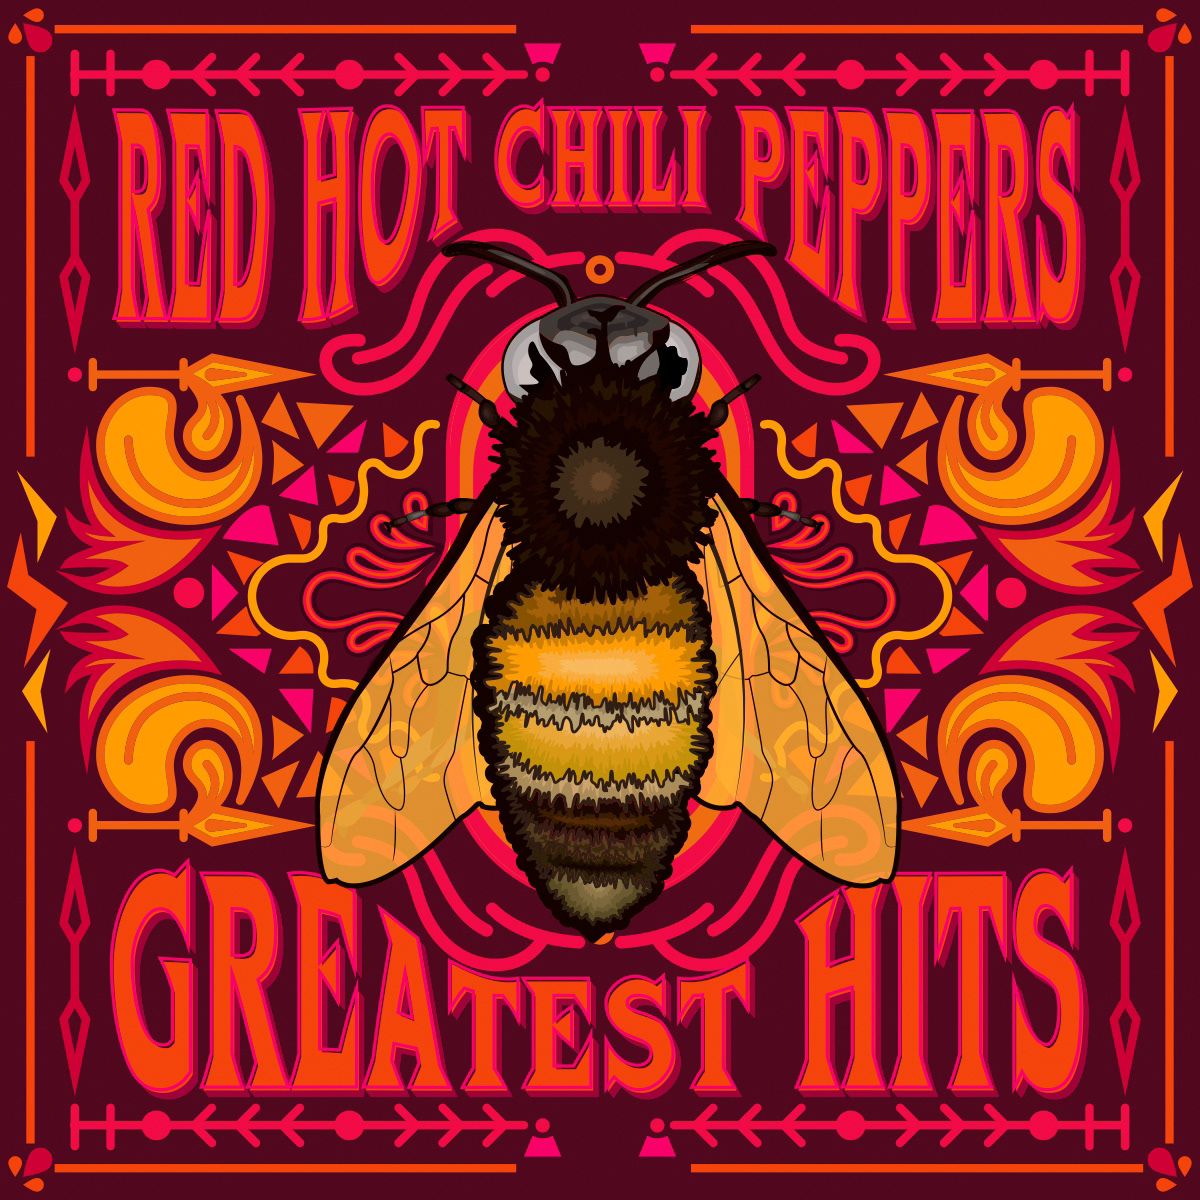 Red Hot Chili Peppers Album Design.